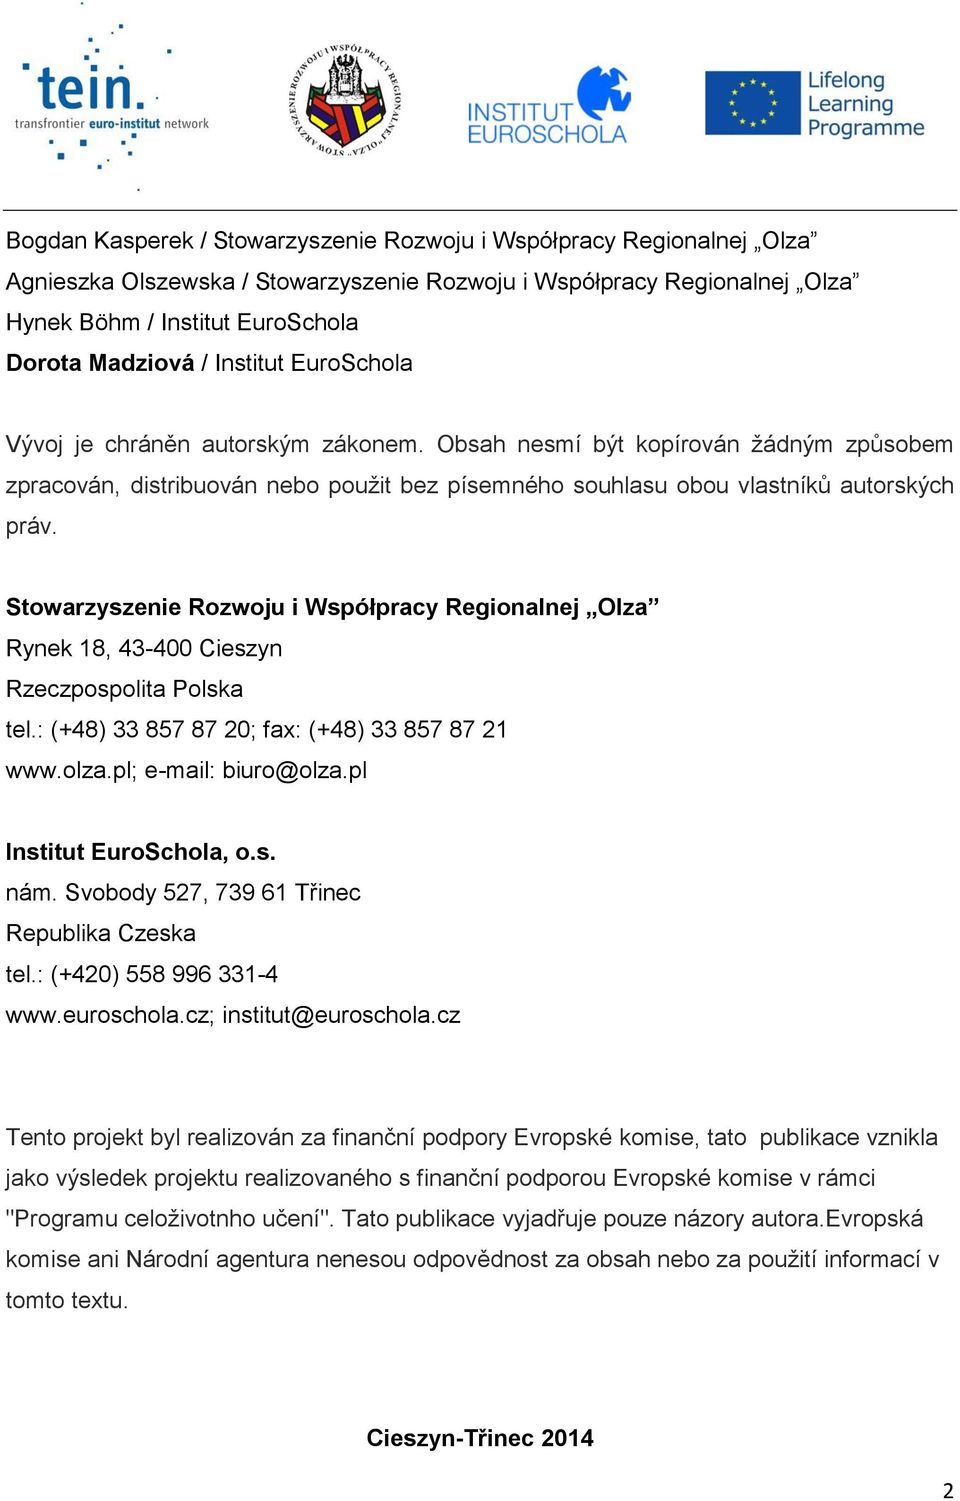 Stowarzyszenie Rozwoju i Współpracy Regionalnej Olza Rynek 18, 43-400 Cieszyn Rzeczpospolita Polska tel.: (+48) 33 857 87 20; fax: (+48) 33 857 87 21 www.olza.pl; e-mail: biuro@olza.